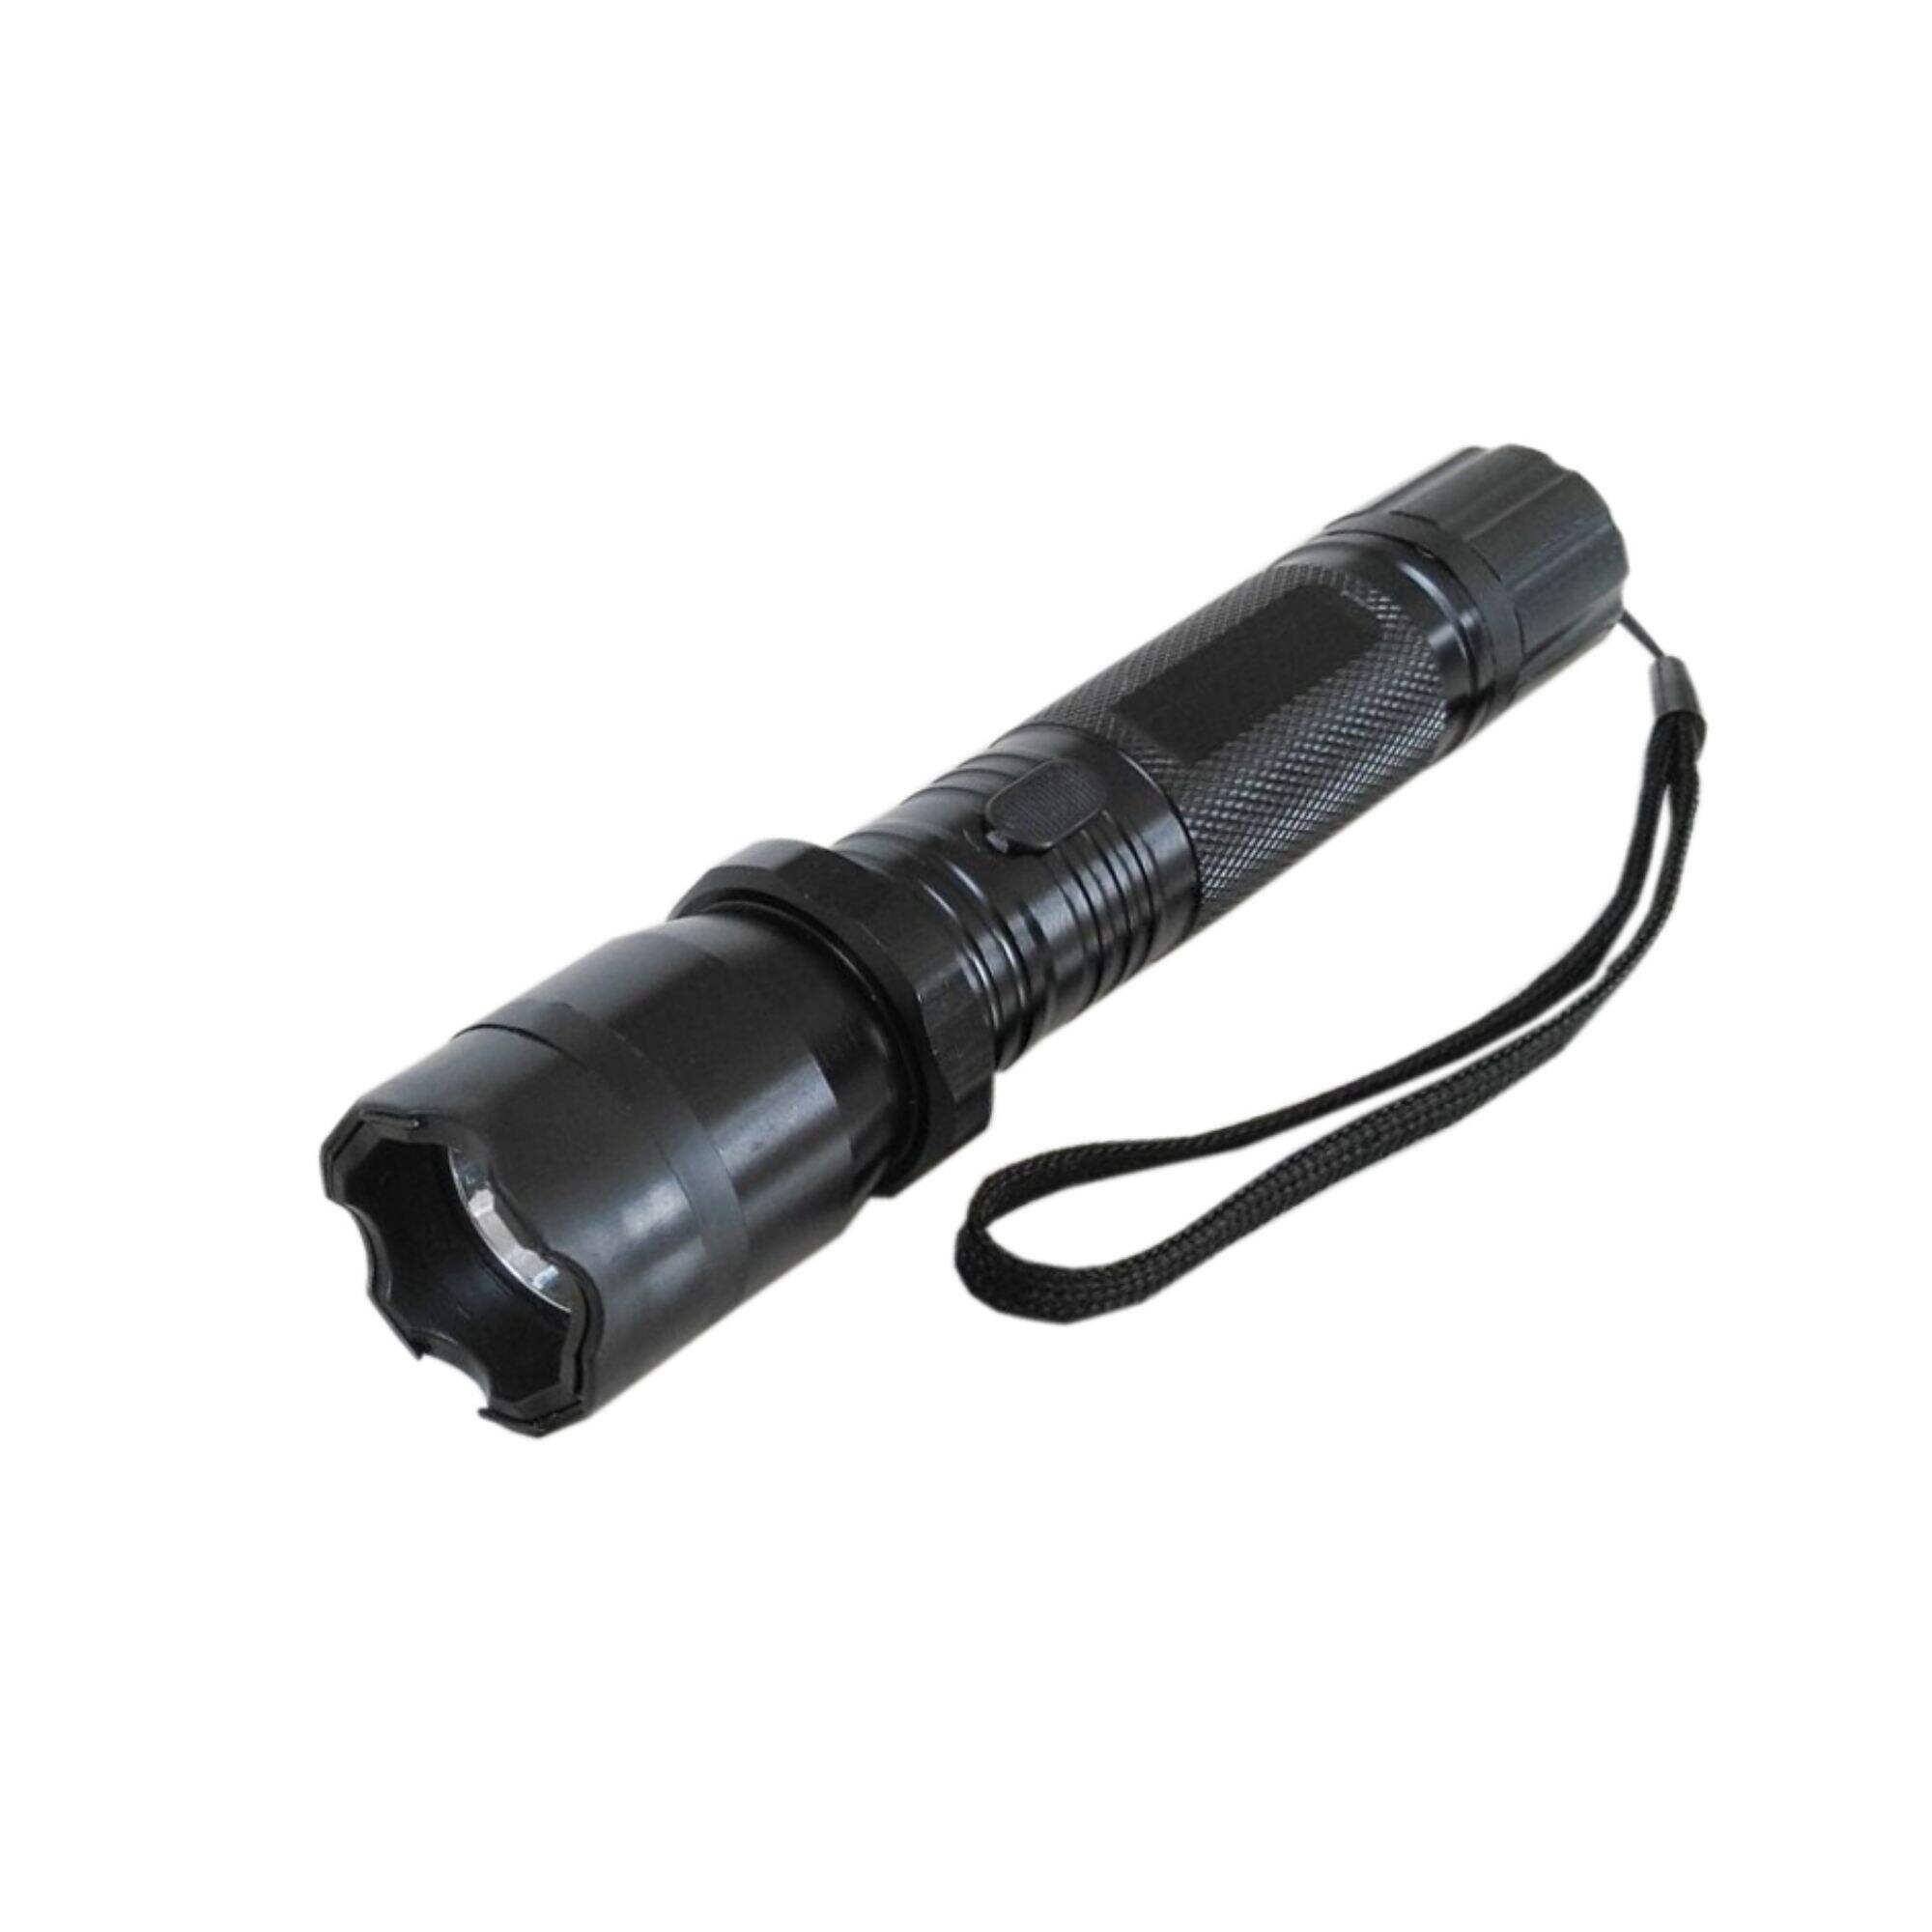 Stun flashlight 1101 (KL-8801) Aluminium alloy self-defense